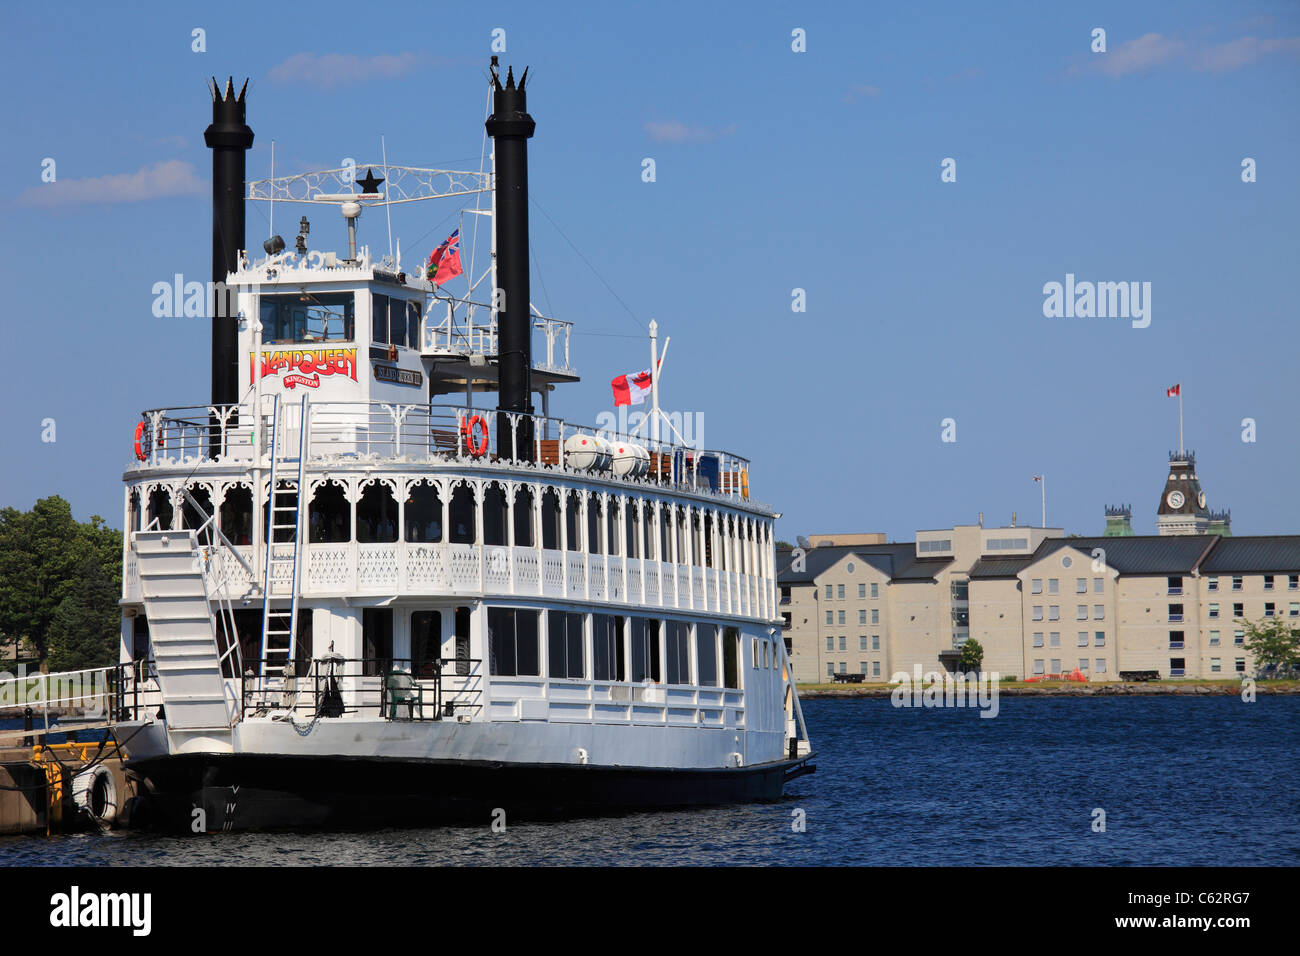 Canada, Ontario, Kingston, Island Queen, sightseeing ship, Lake Ontario, Stock Photo